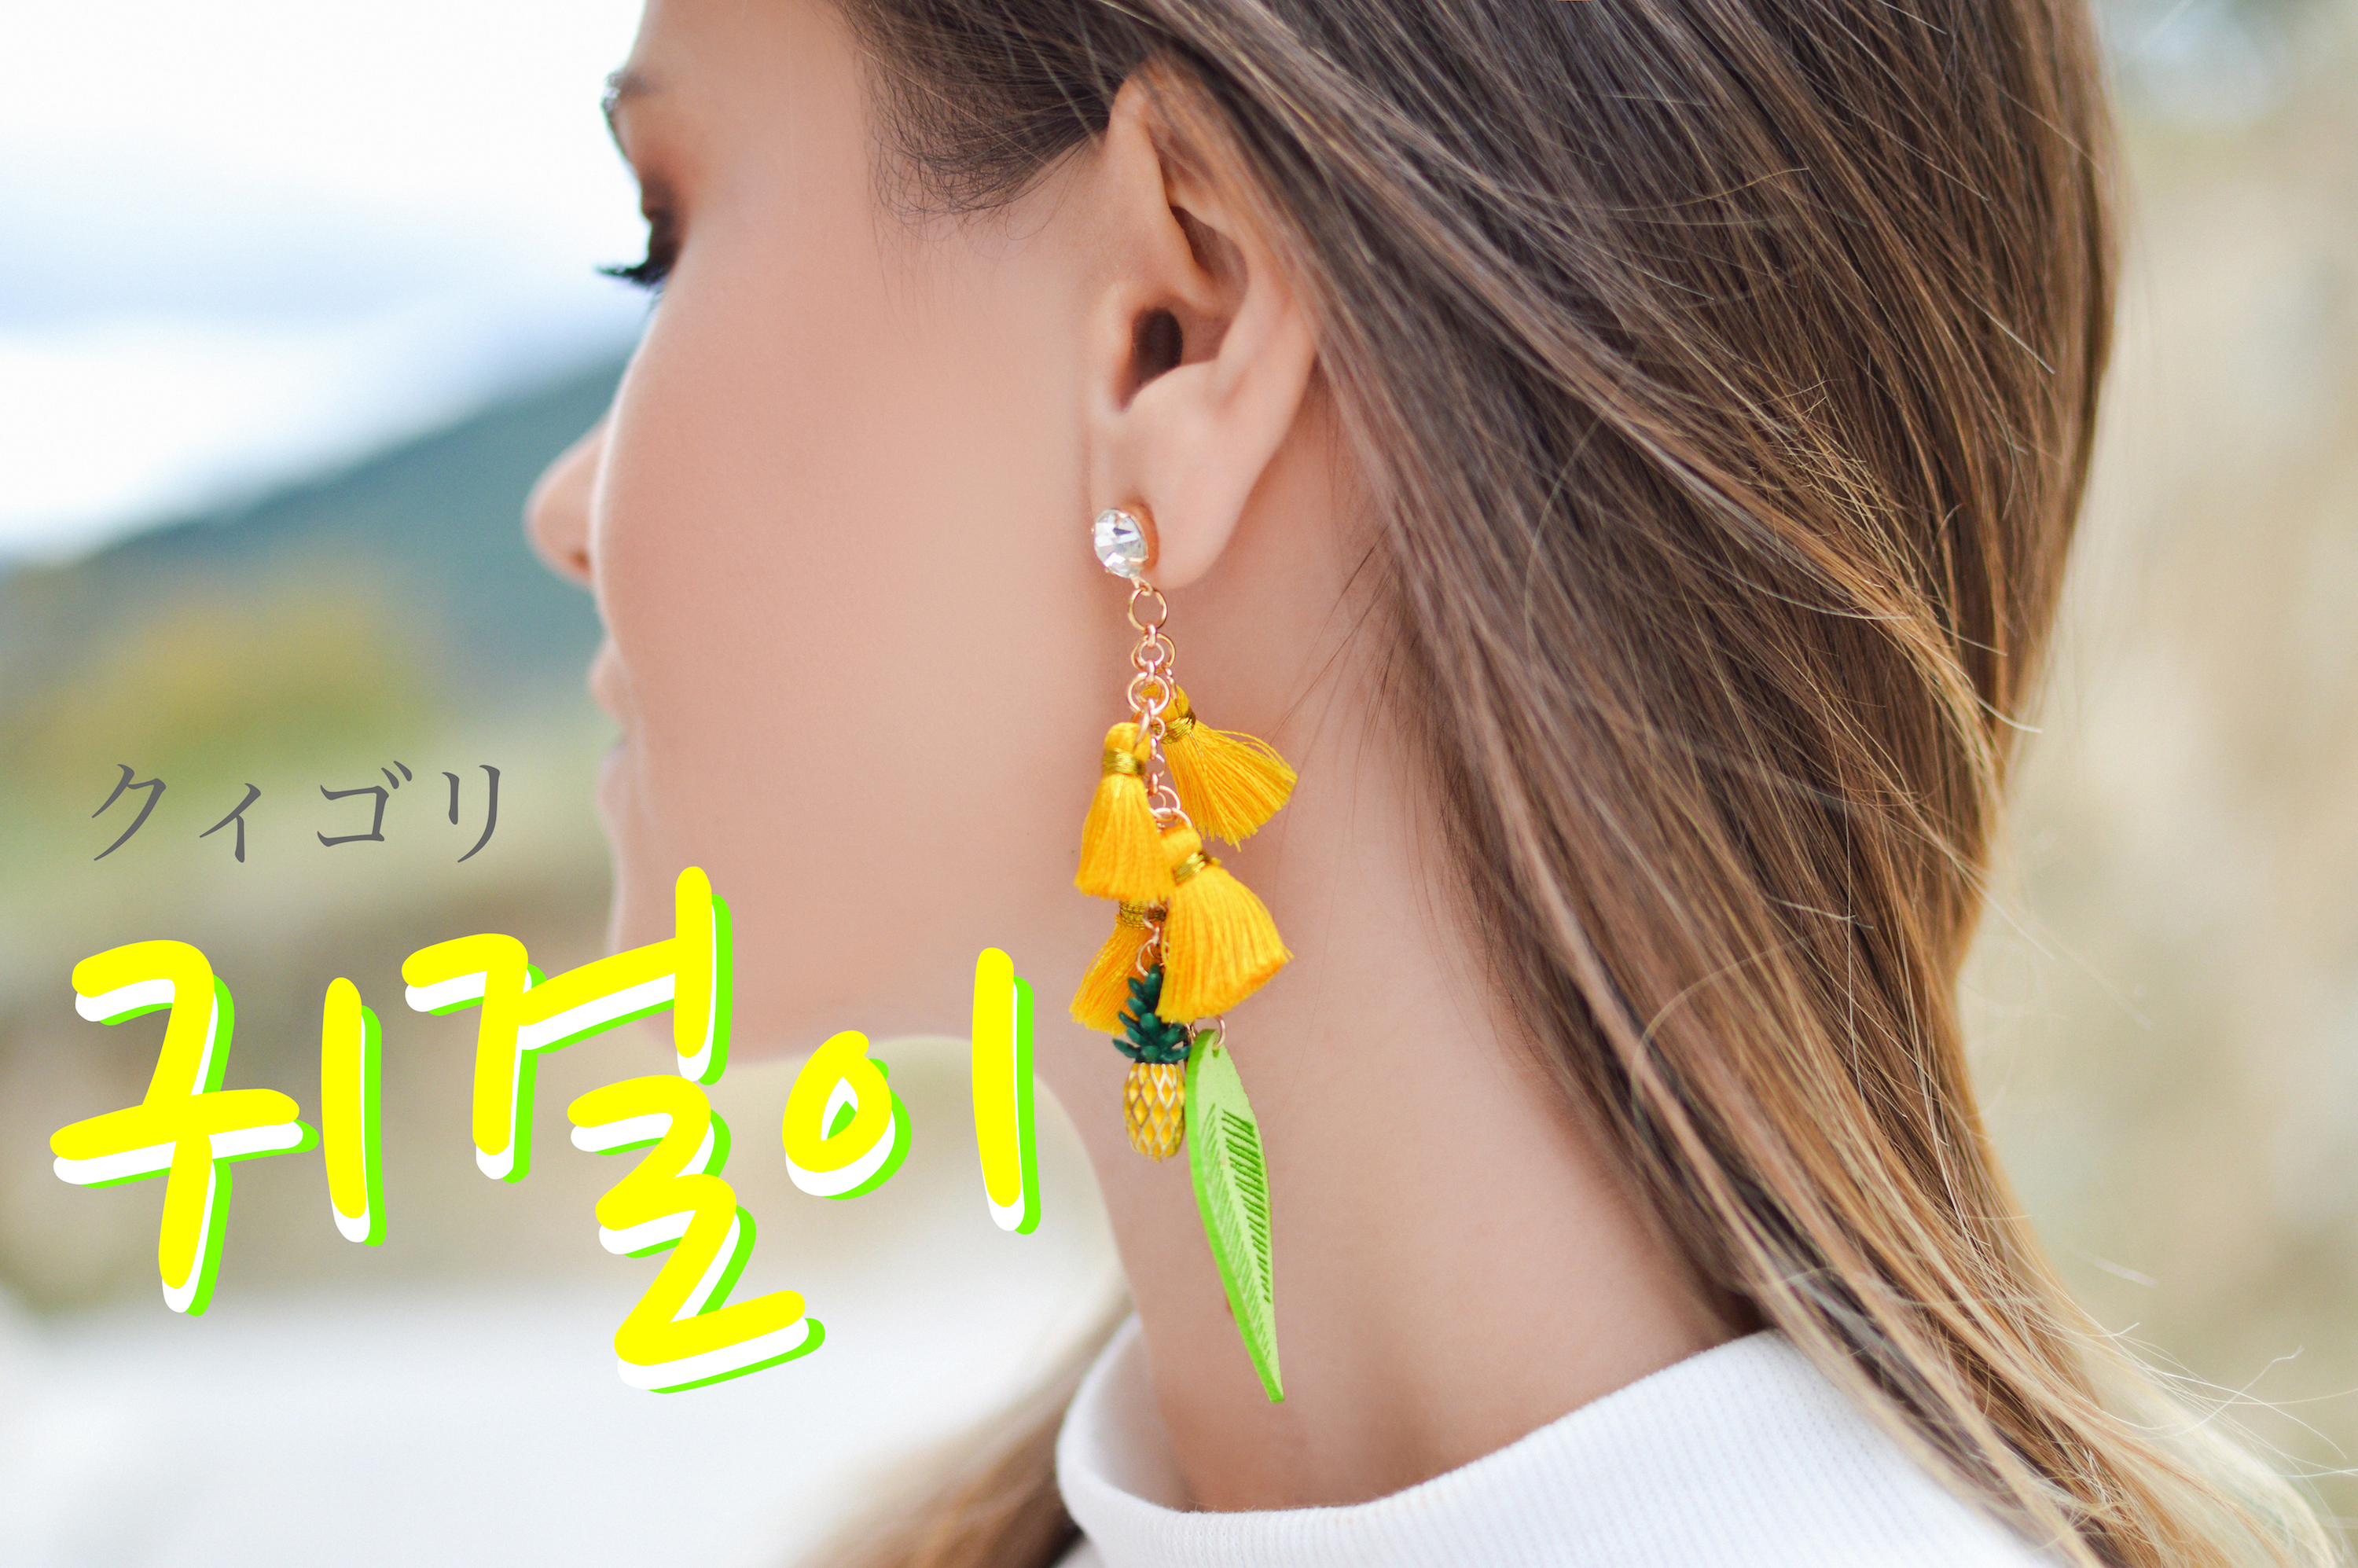 koreanword-earrings